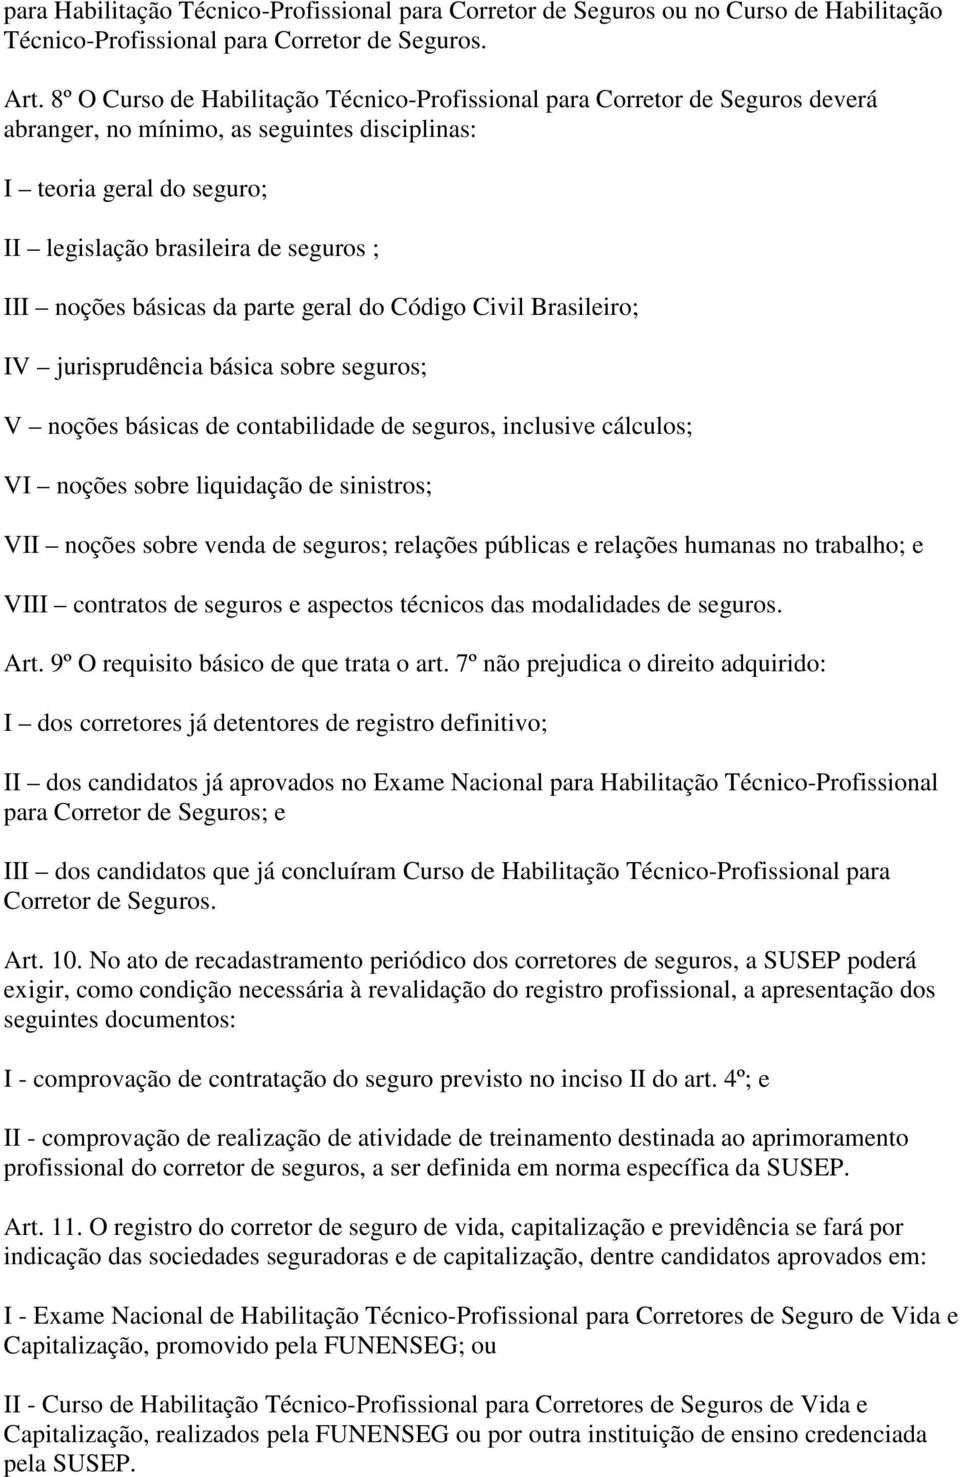 noções básicas da parte geral do Código Civil Brasileiro; IV jurisprudência básica sobre seguros; V noções básicas de contabilidade de seguros, inclusive cálculos; VI noções sobre liquidação de